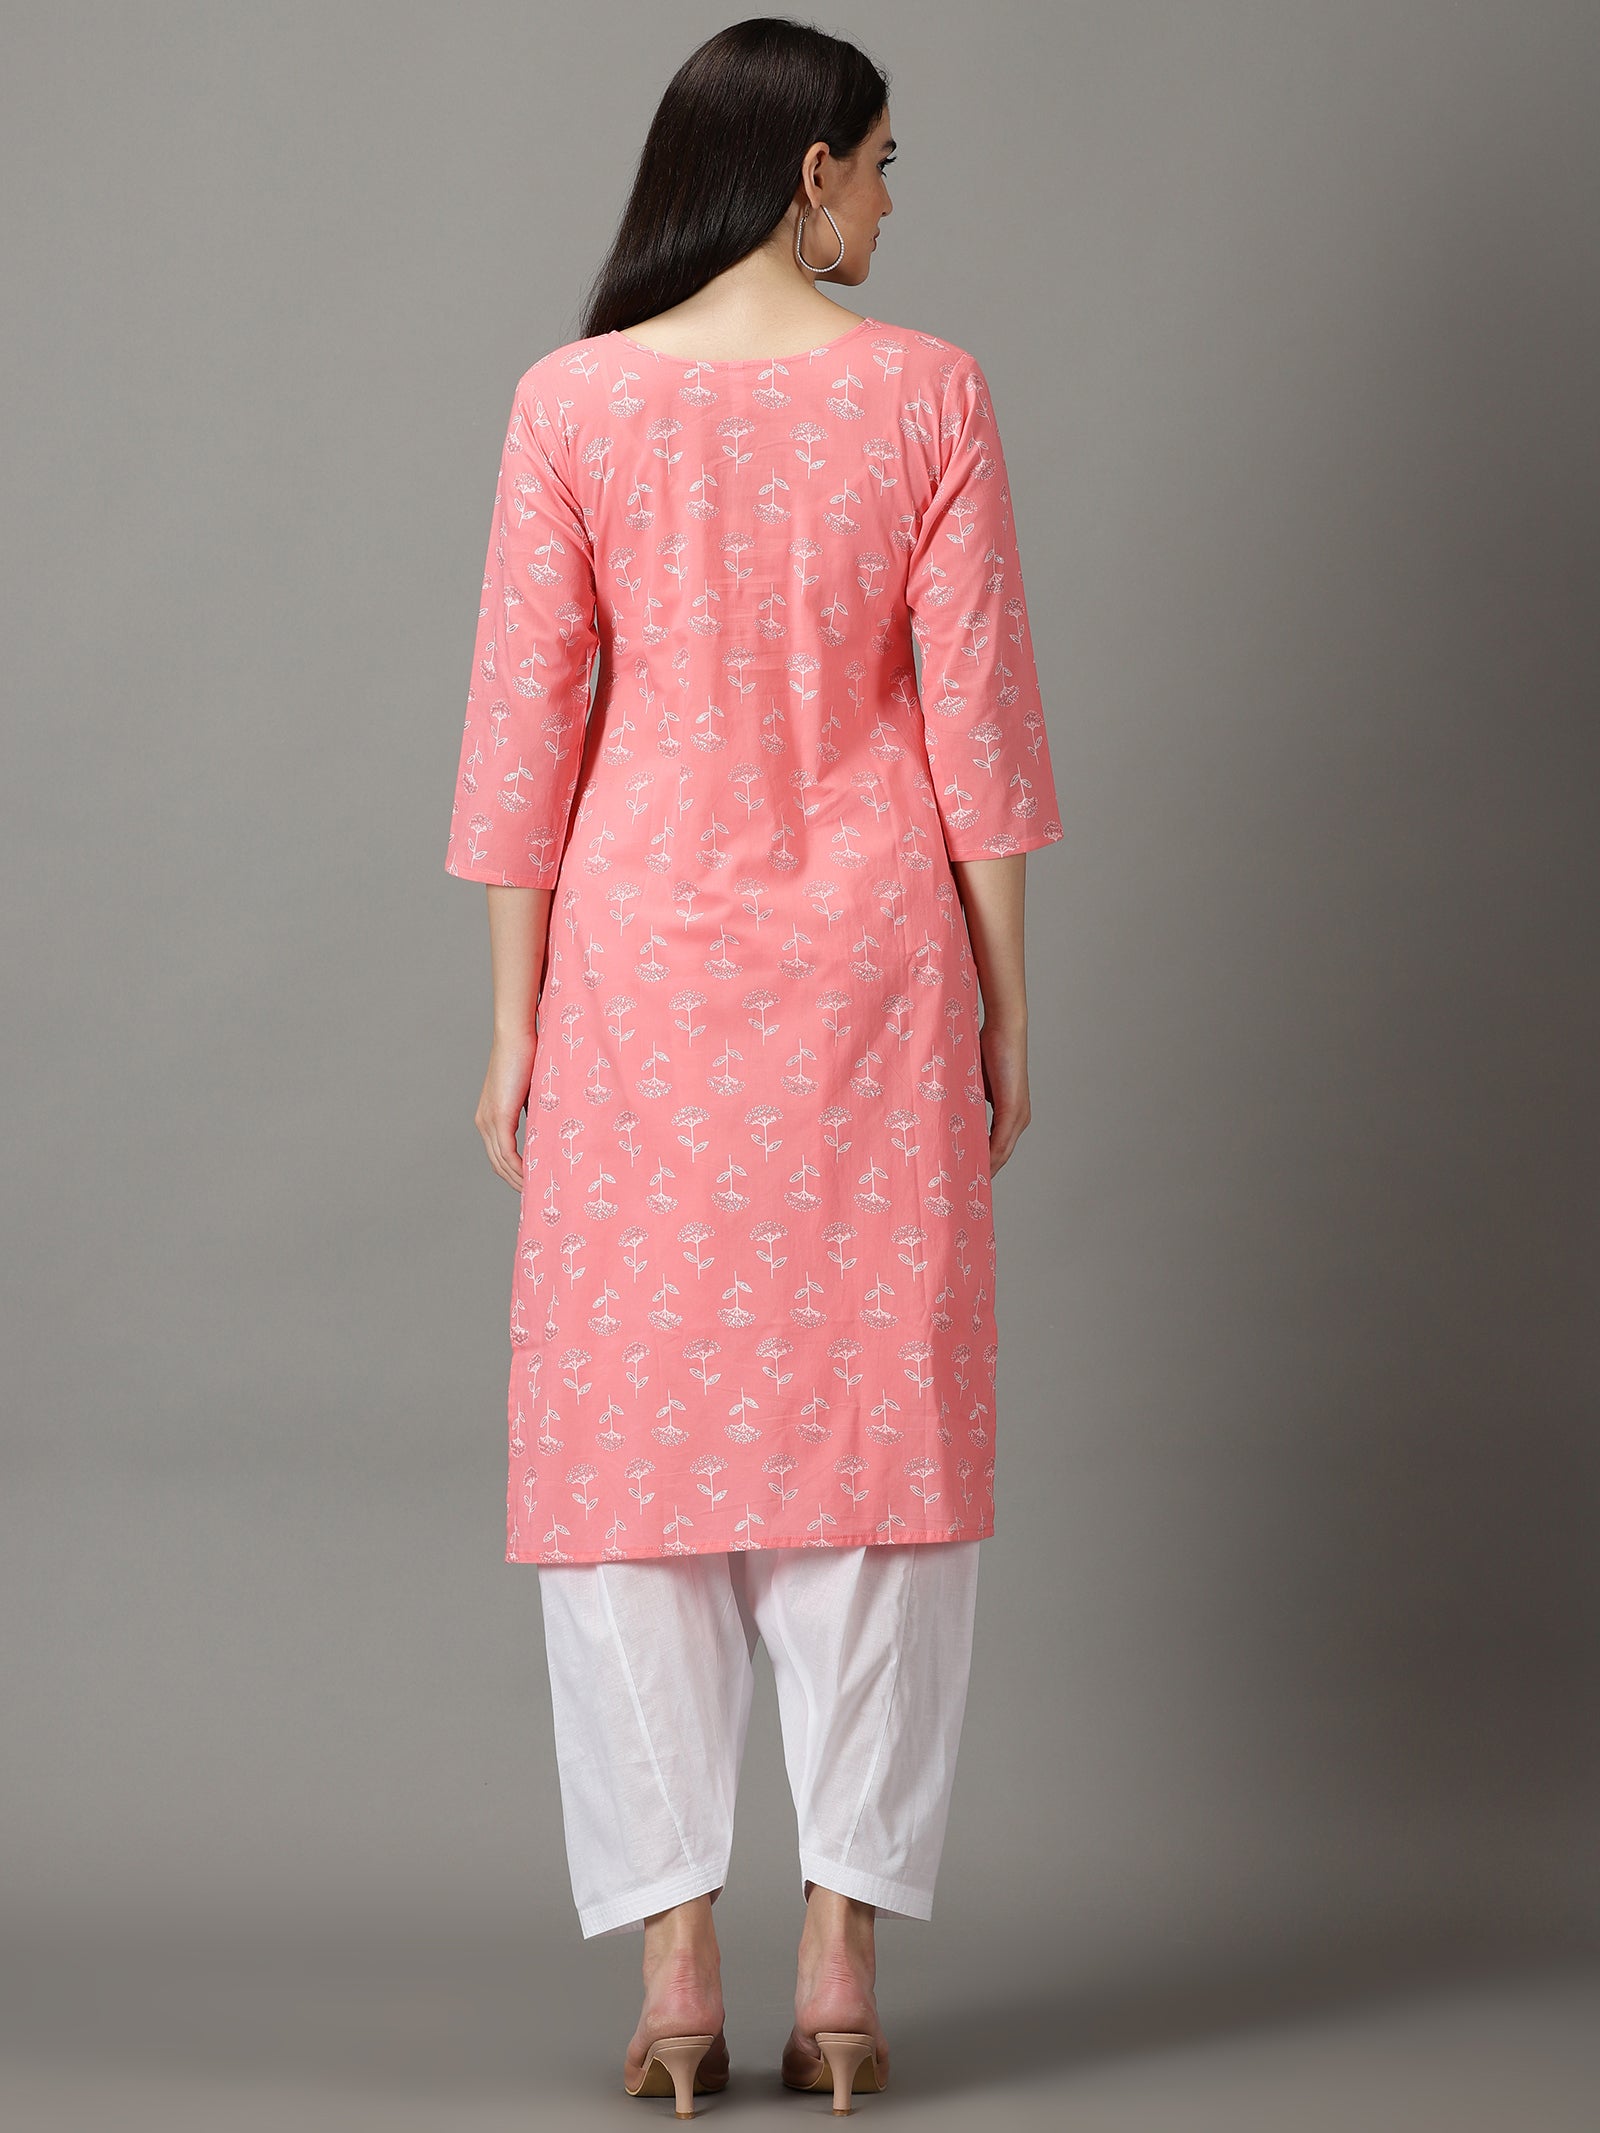 Pink Cotton Kurta With Salwar